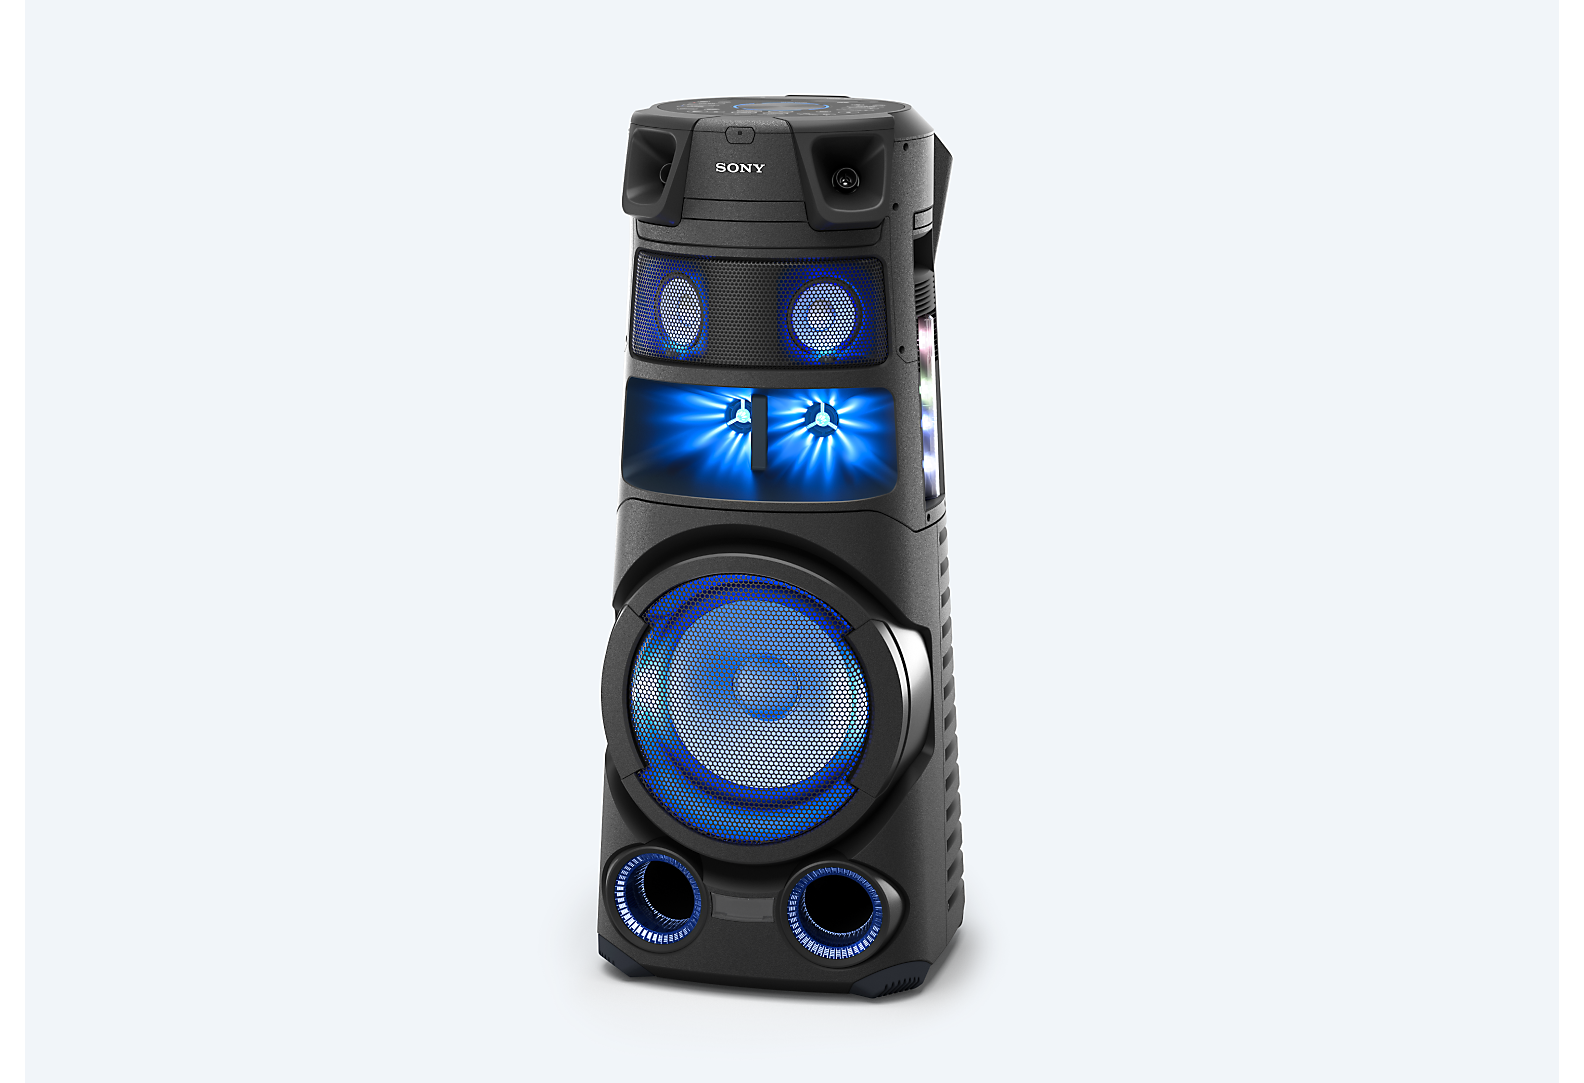 Sonyjev audiosustav visoke snage na plavoj pozadini